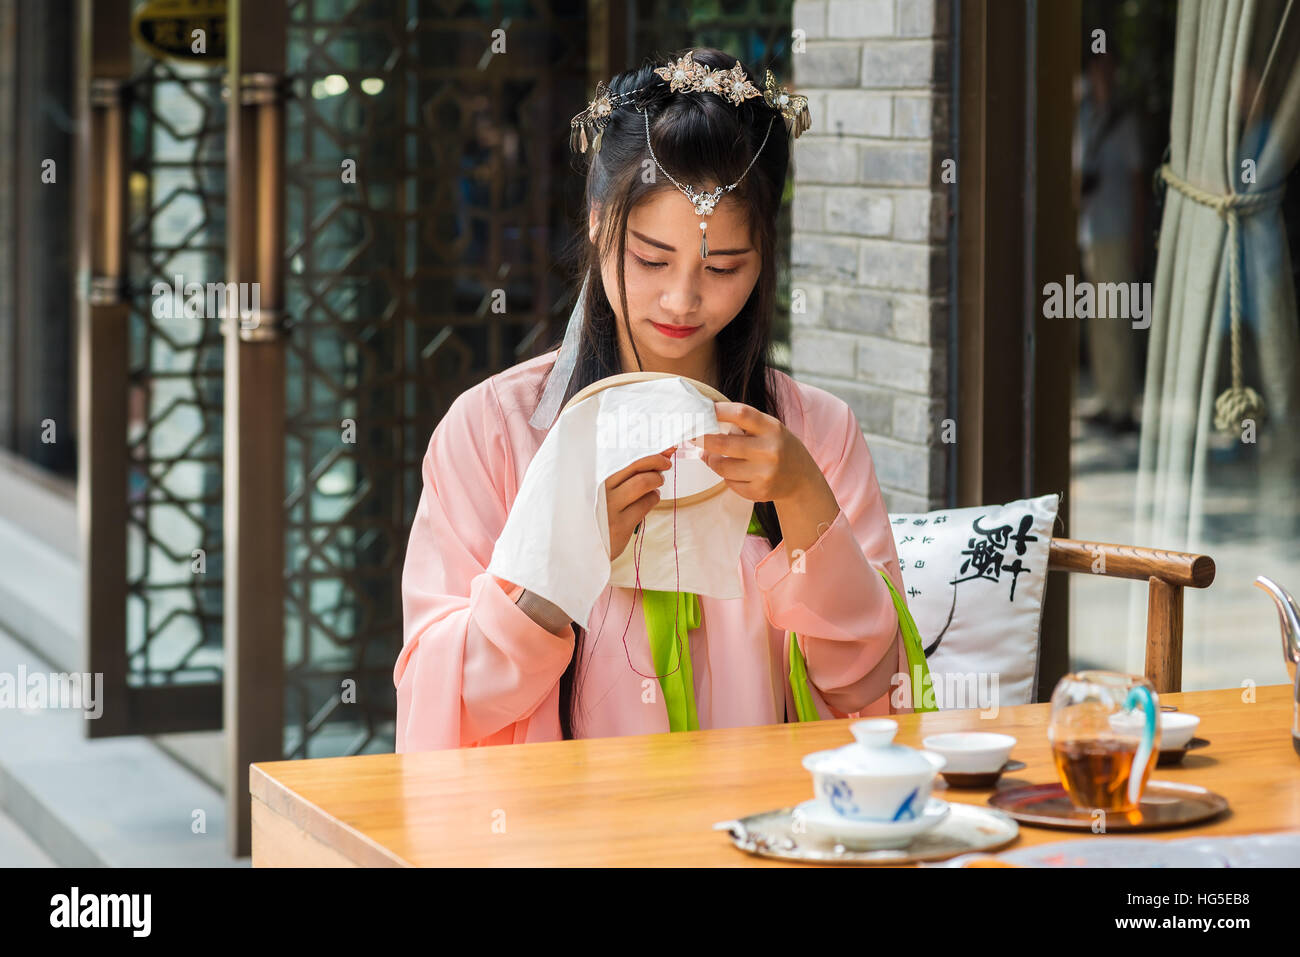 Chengdu, nella provincia di Sichuan, in Cina - Settembre 24, 2016 : ragazza cinese di indossare abiti tradizionali a una tabella con un po' di tessitura tè in una strada. Foto Stock